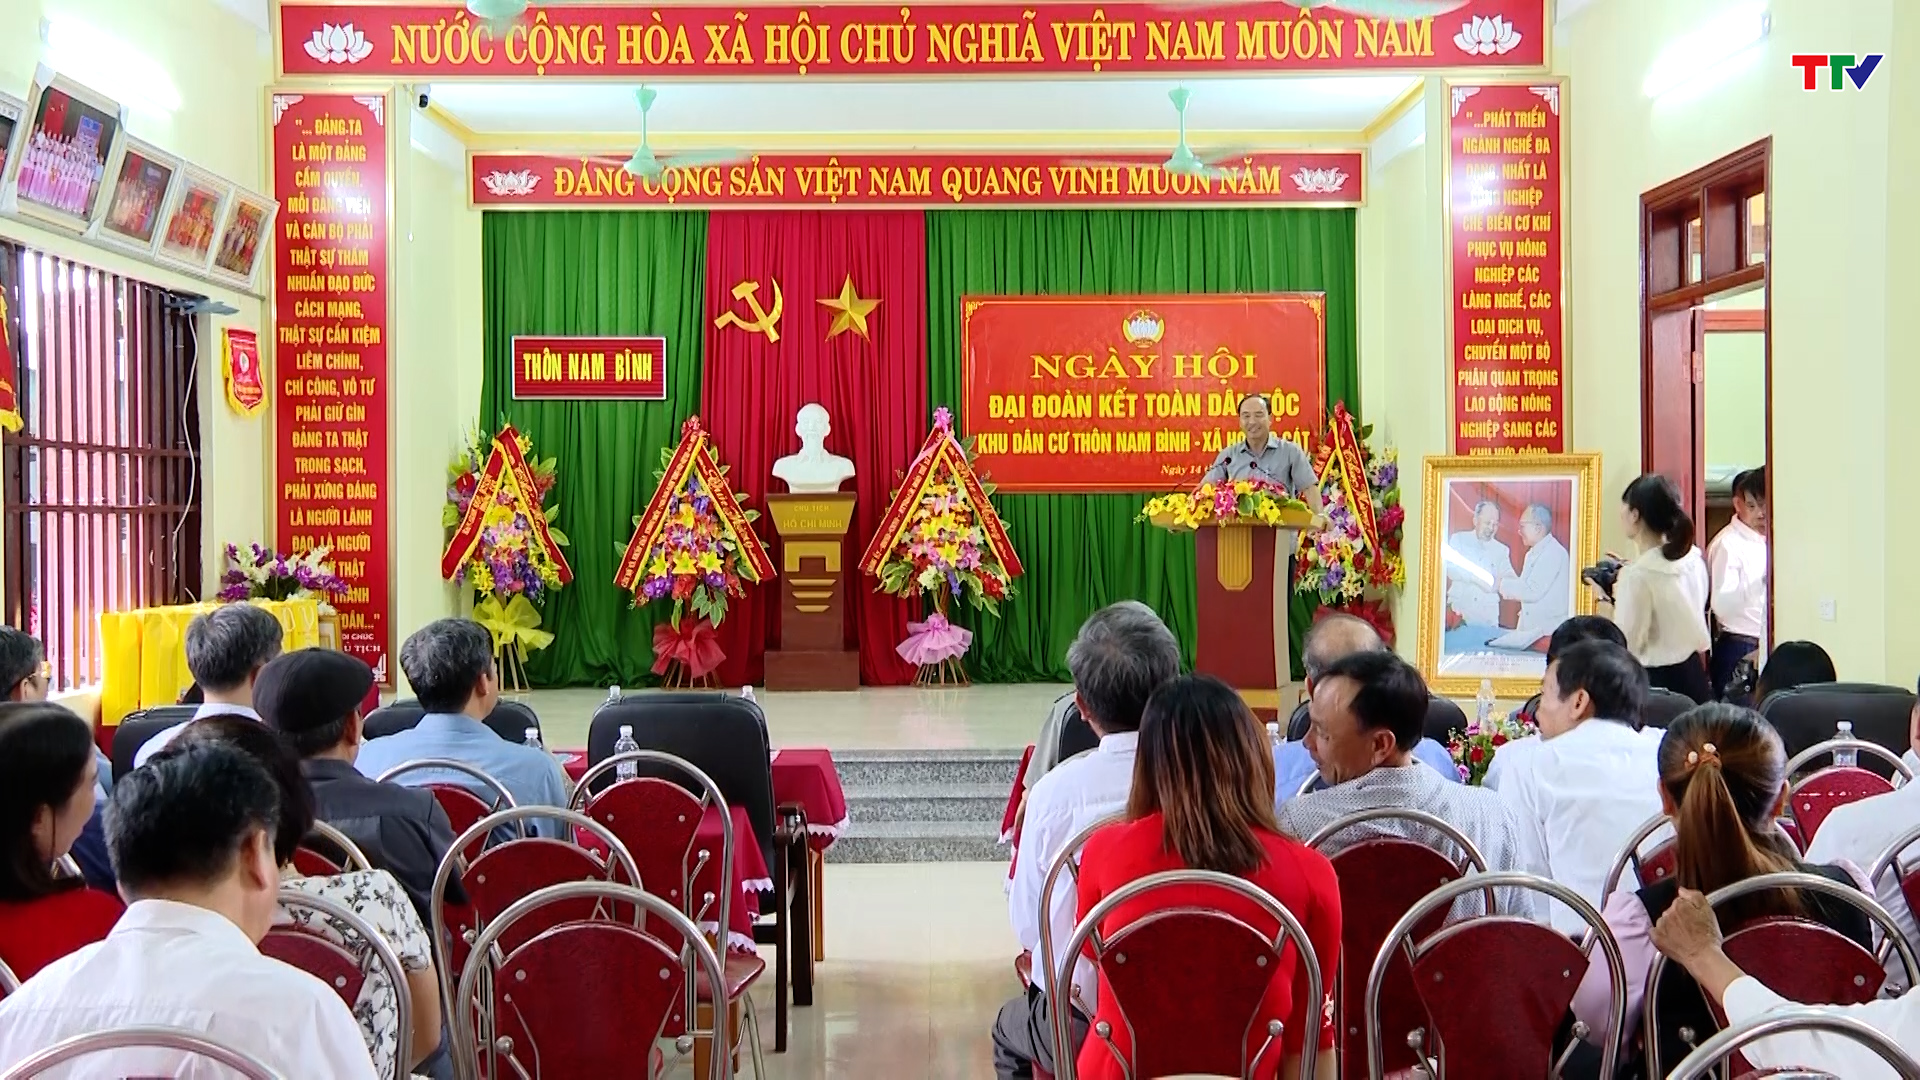 Ngày hội Đại đoàn kết toàn dân tộc thôn Nam Bình, xã Hoằng Cát, huyện Hoằng Hoá - Ảnh 3.